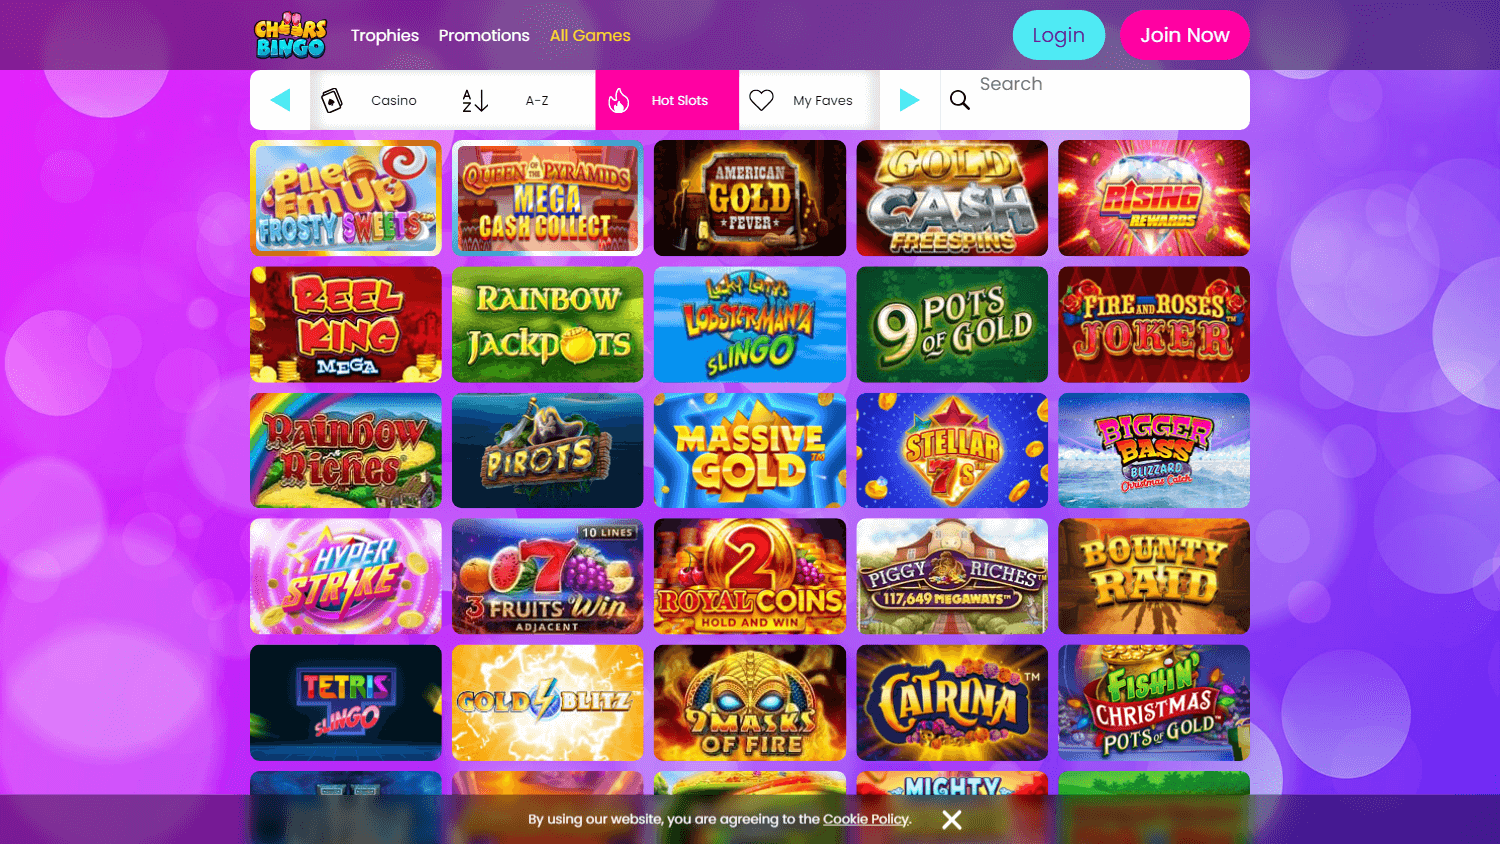 cheers_bingo_casino_game_gallery_desktop